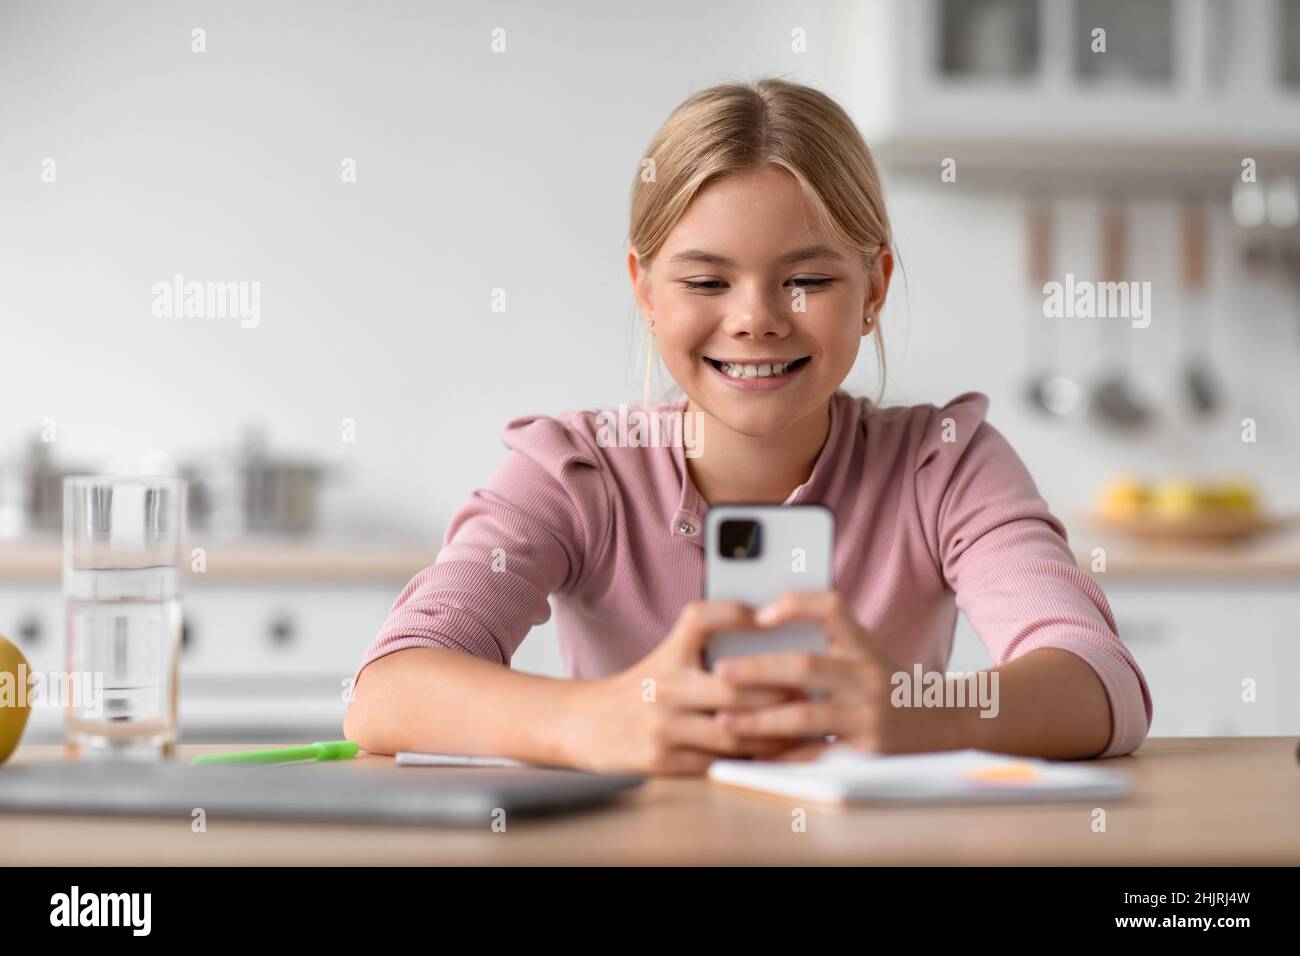 Allegro studente caucasico ragazza che chiacchiera al telefono, si siede al tavolo in cucina interna Foto Stock